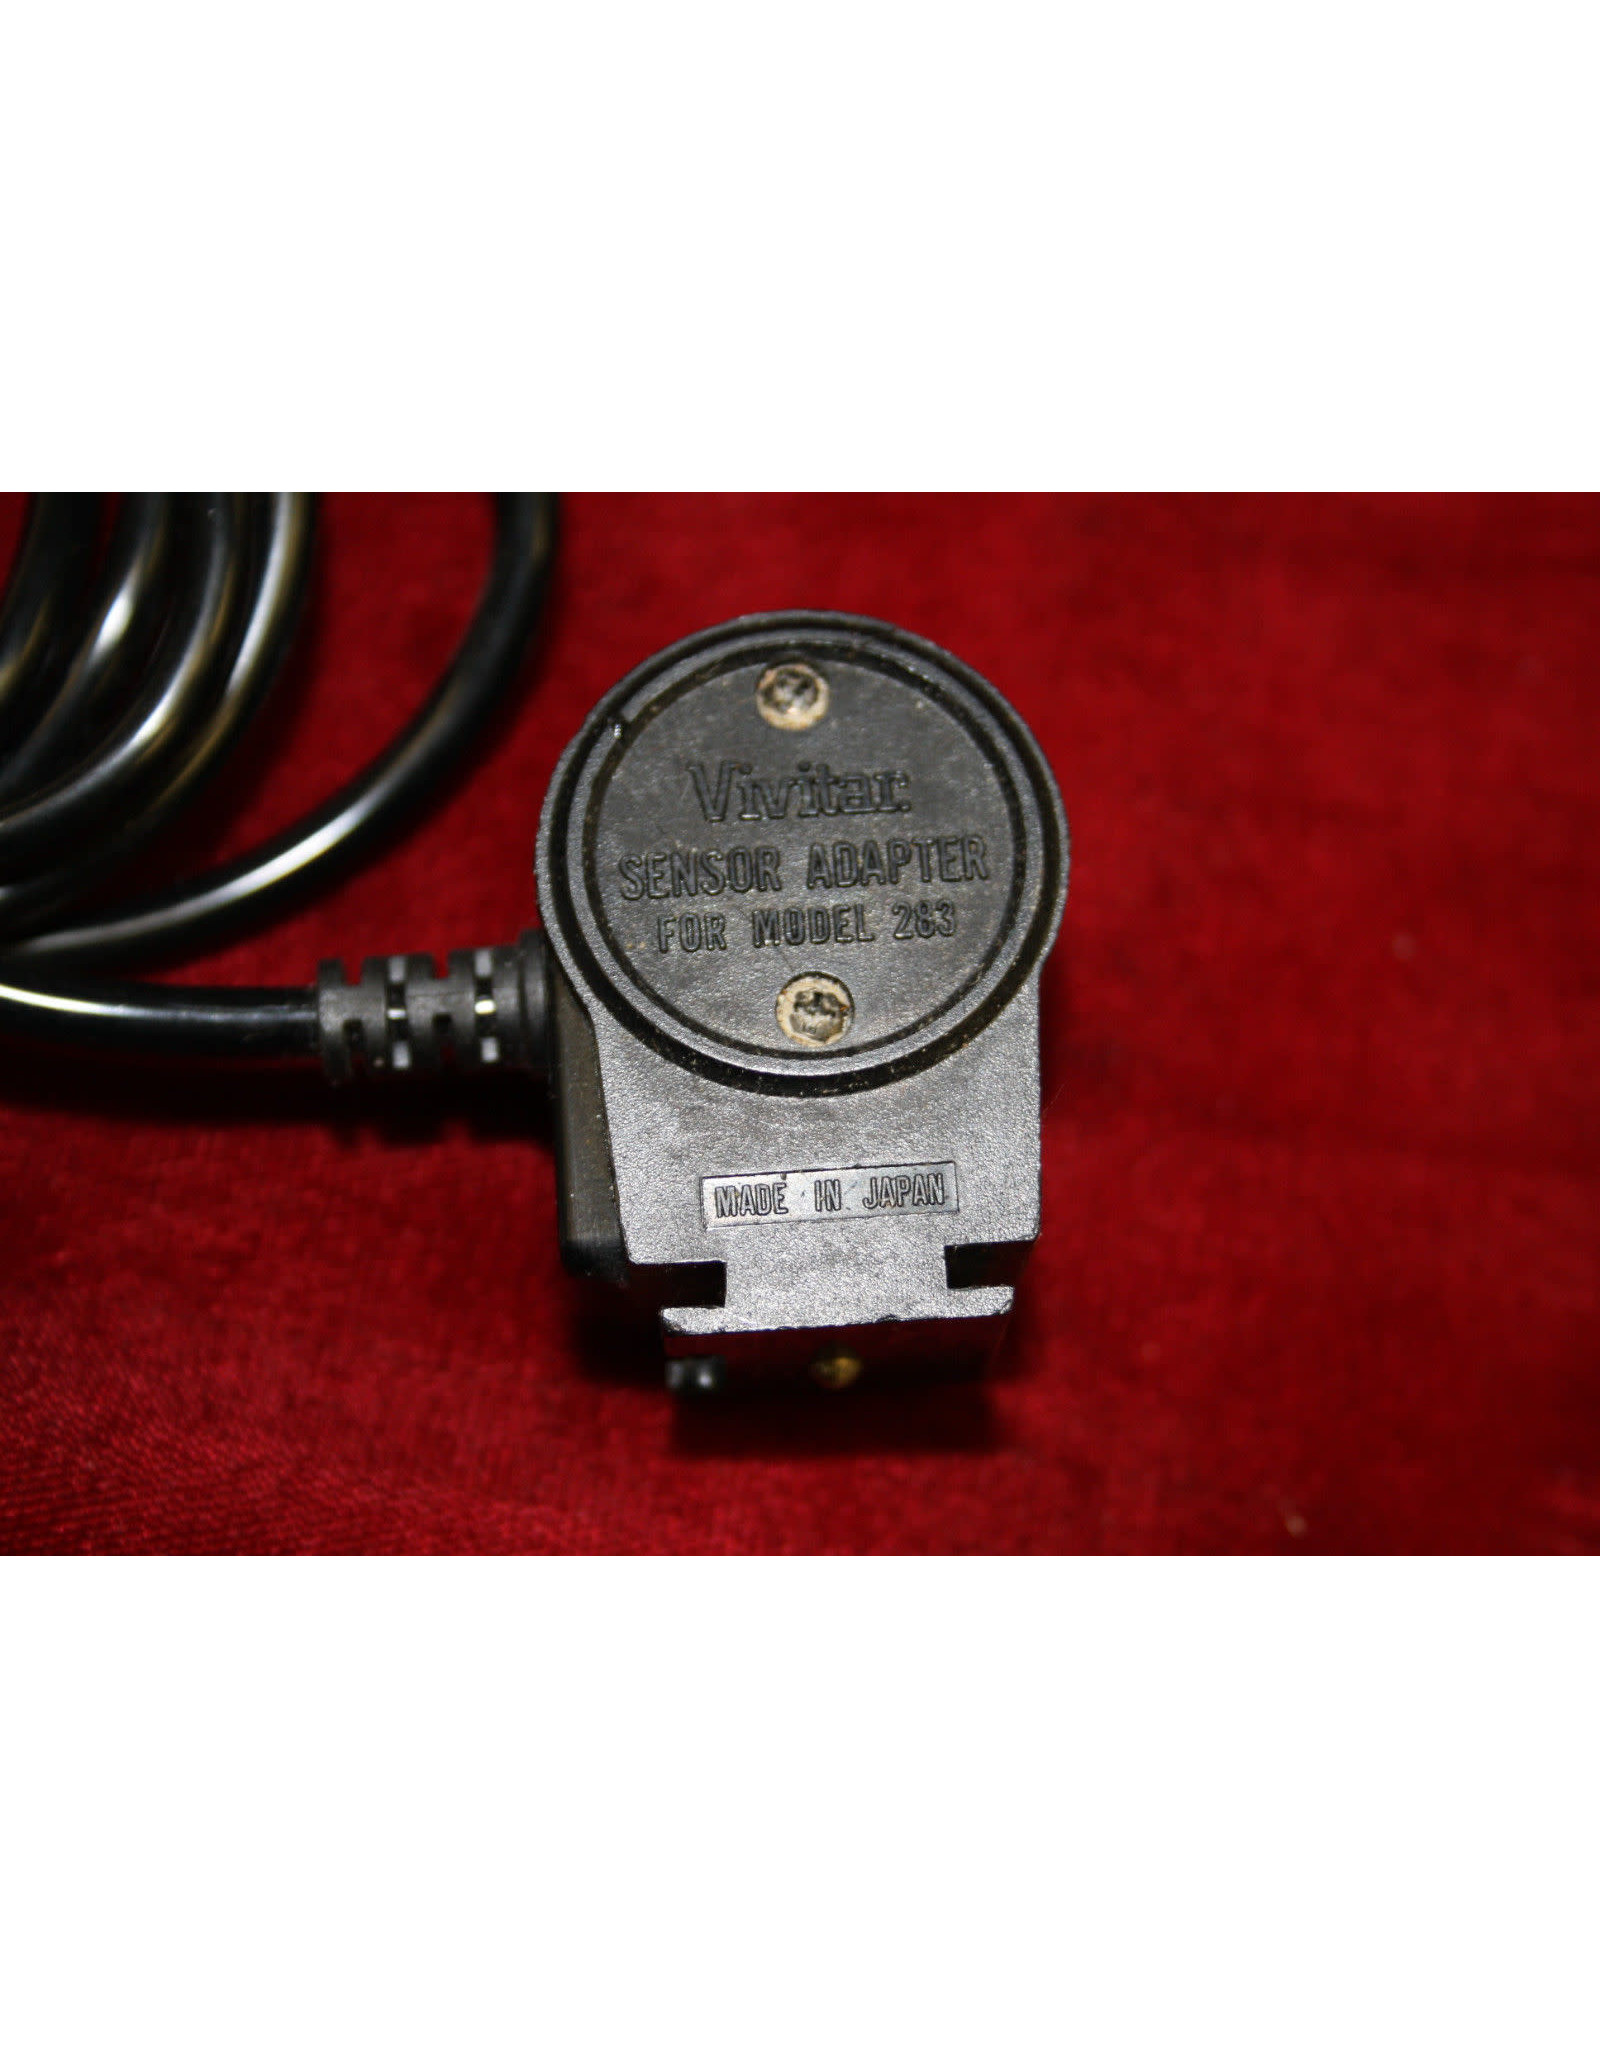 Vivitar SC-3 Sensor Adapter Cord for Model 283 (Pre-owned)